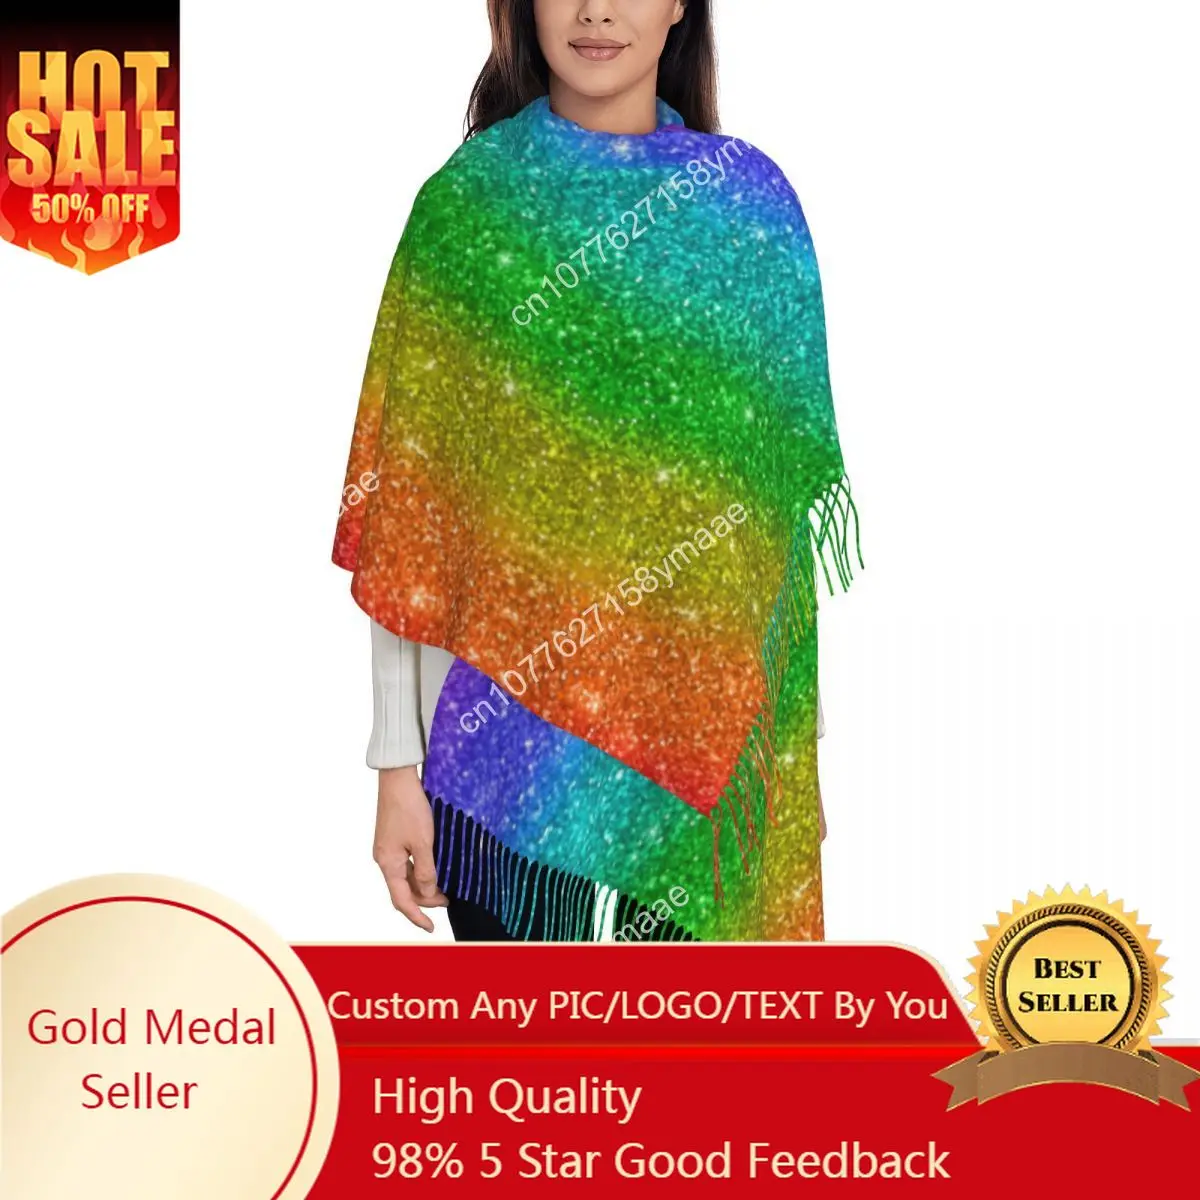 

Custom Egypt Womens Tassel Scarf Glitter Rainbow Pride Long Soft Warm Shawl And Wrap LGBT Rainbow Gifts Cashmere Scarf